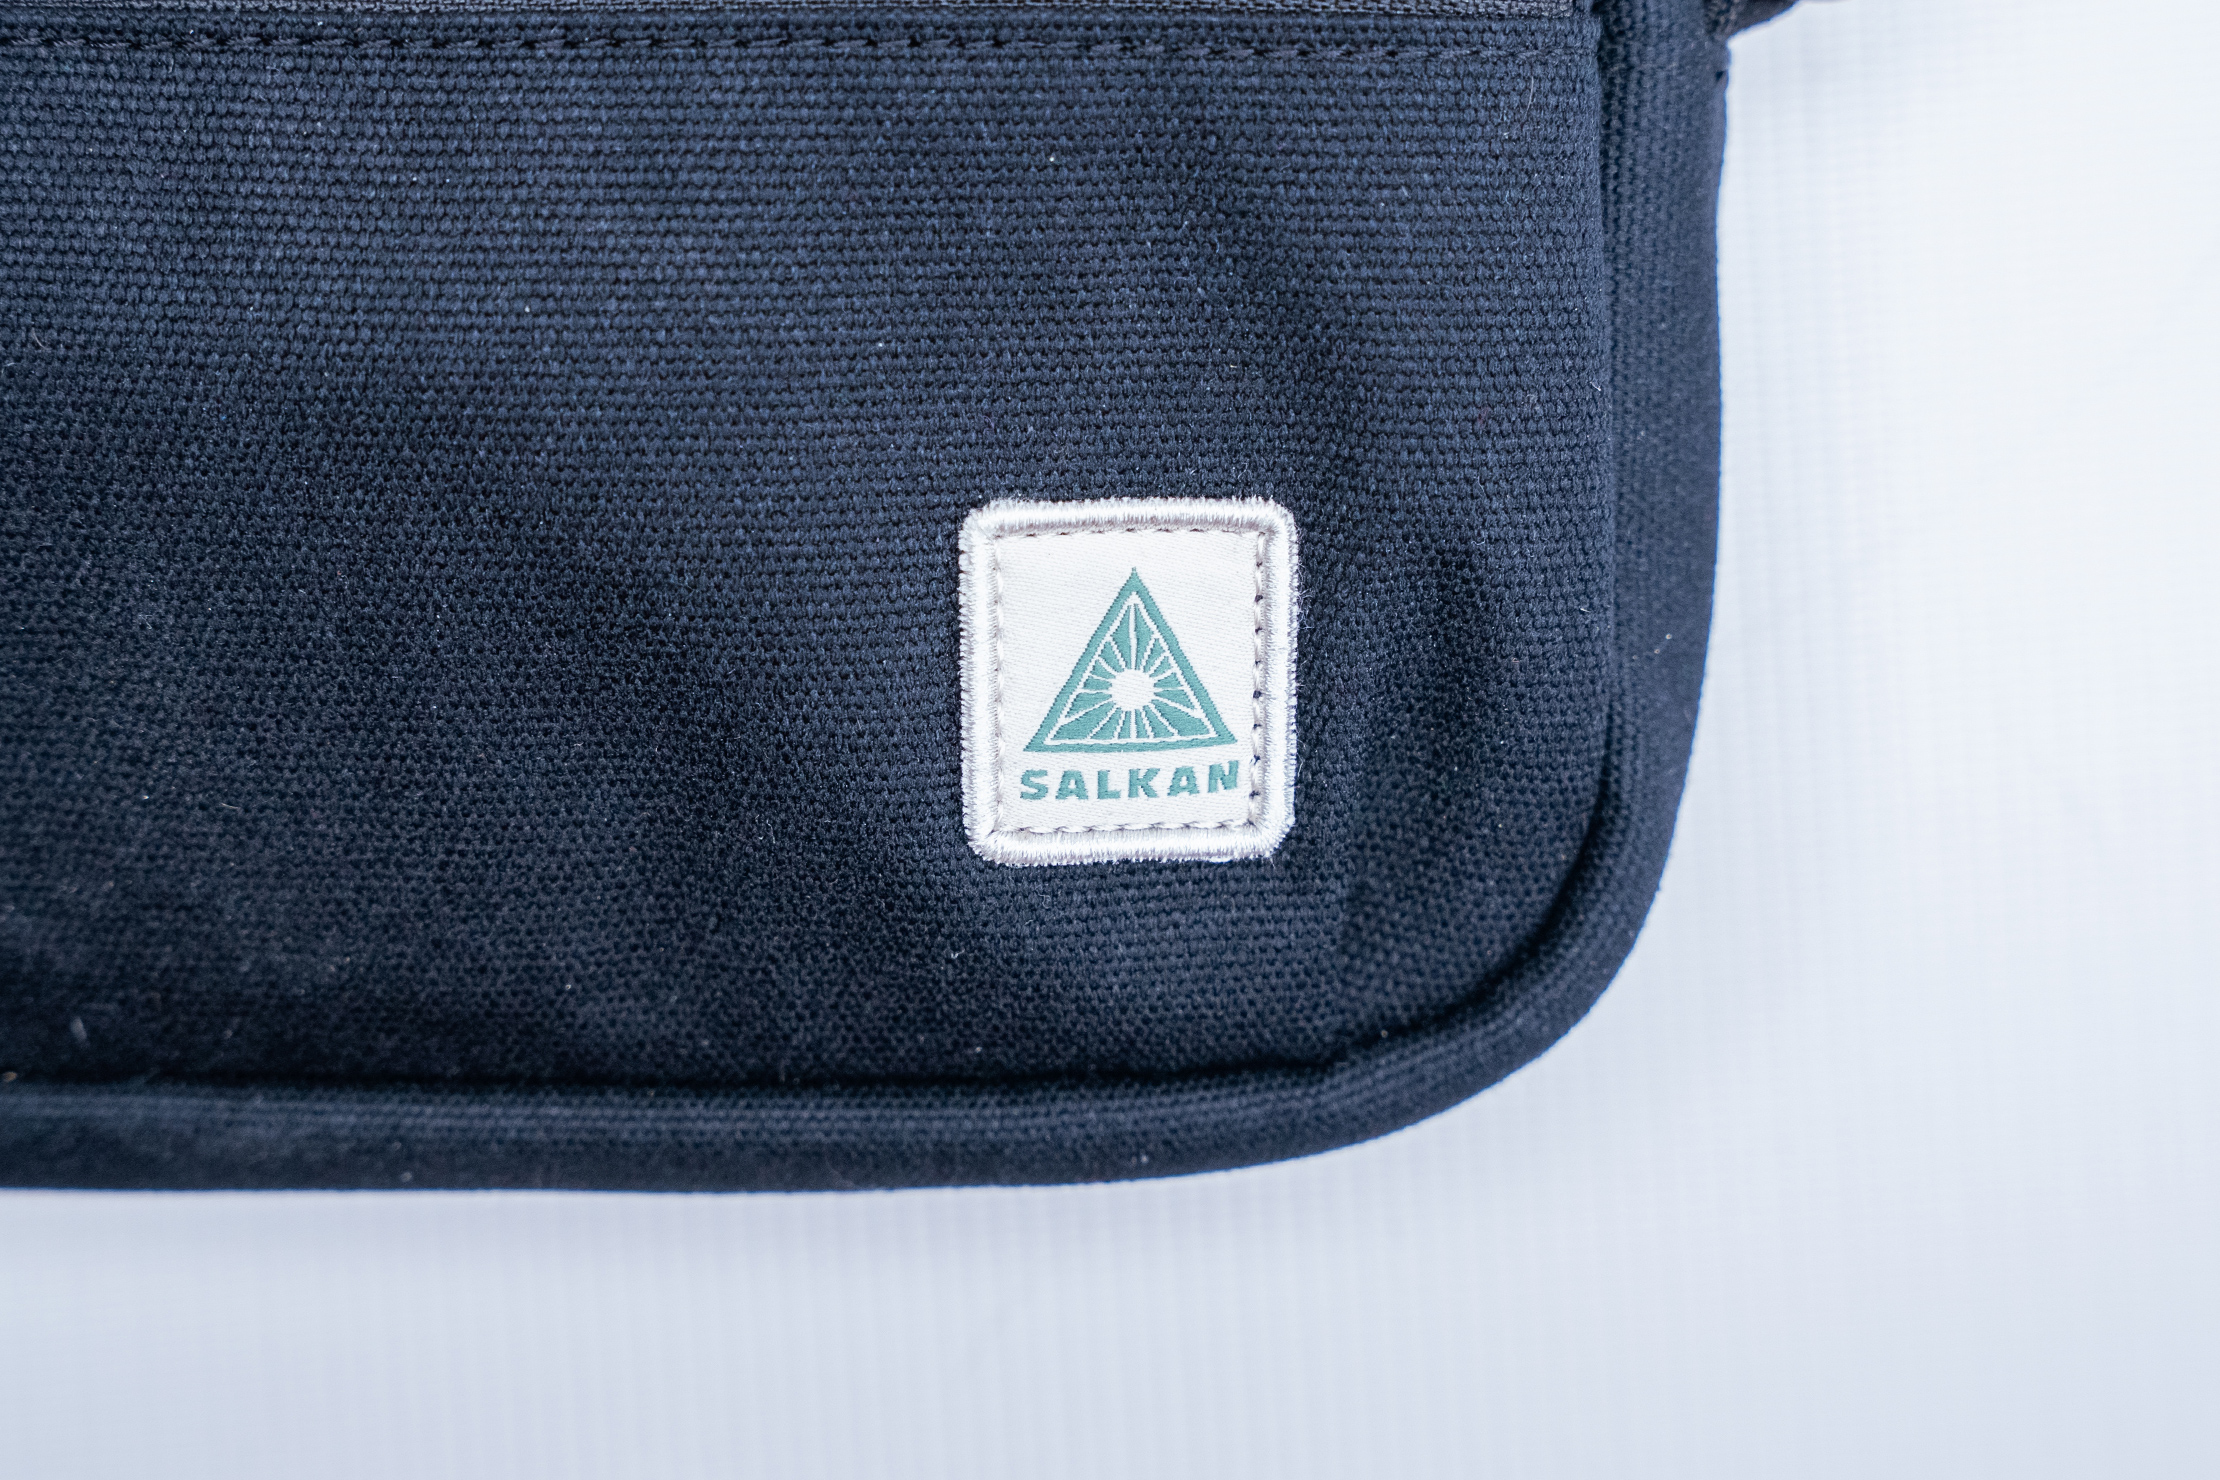 Salkan Tripper Cross Body Bag Brand